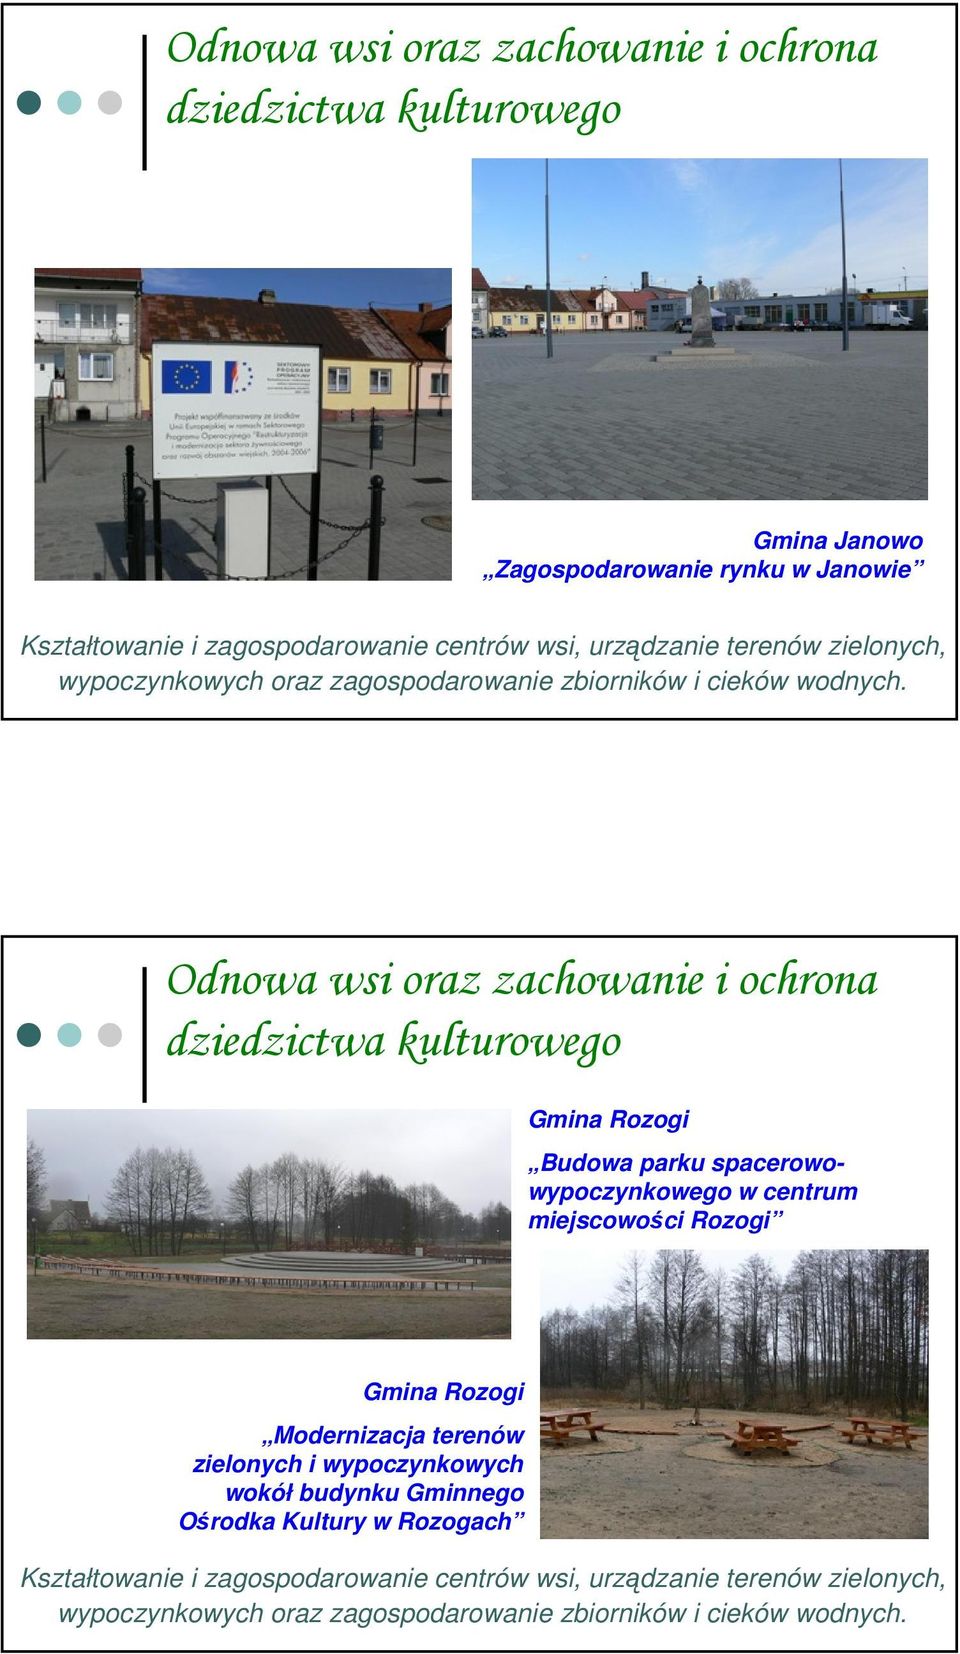 Gmina Rozogi Budowa parku spacerowowypoczynkowego w centrum miejscowości Rozogi Gmina Rozogi Modernizacja terenów zielonych i